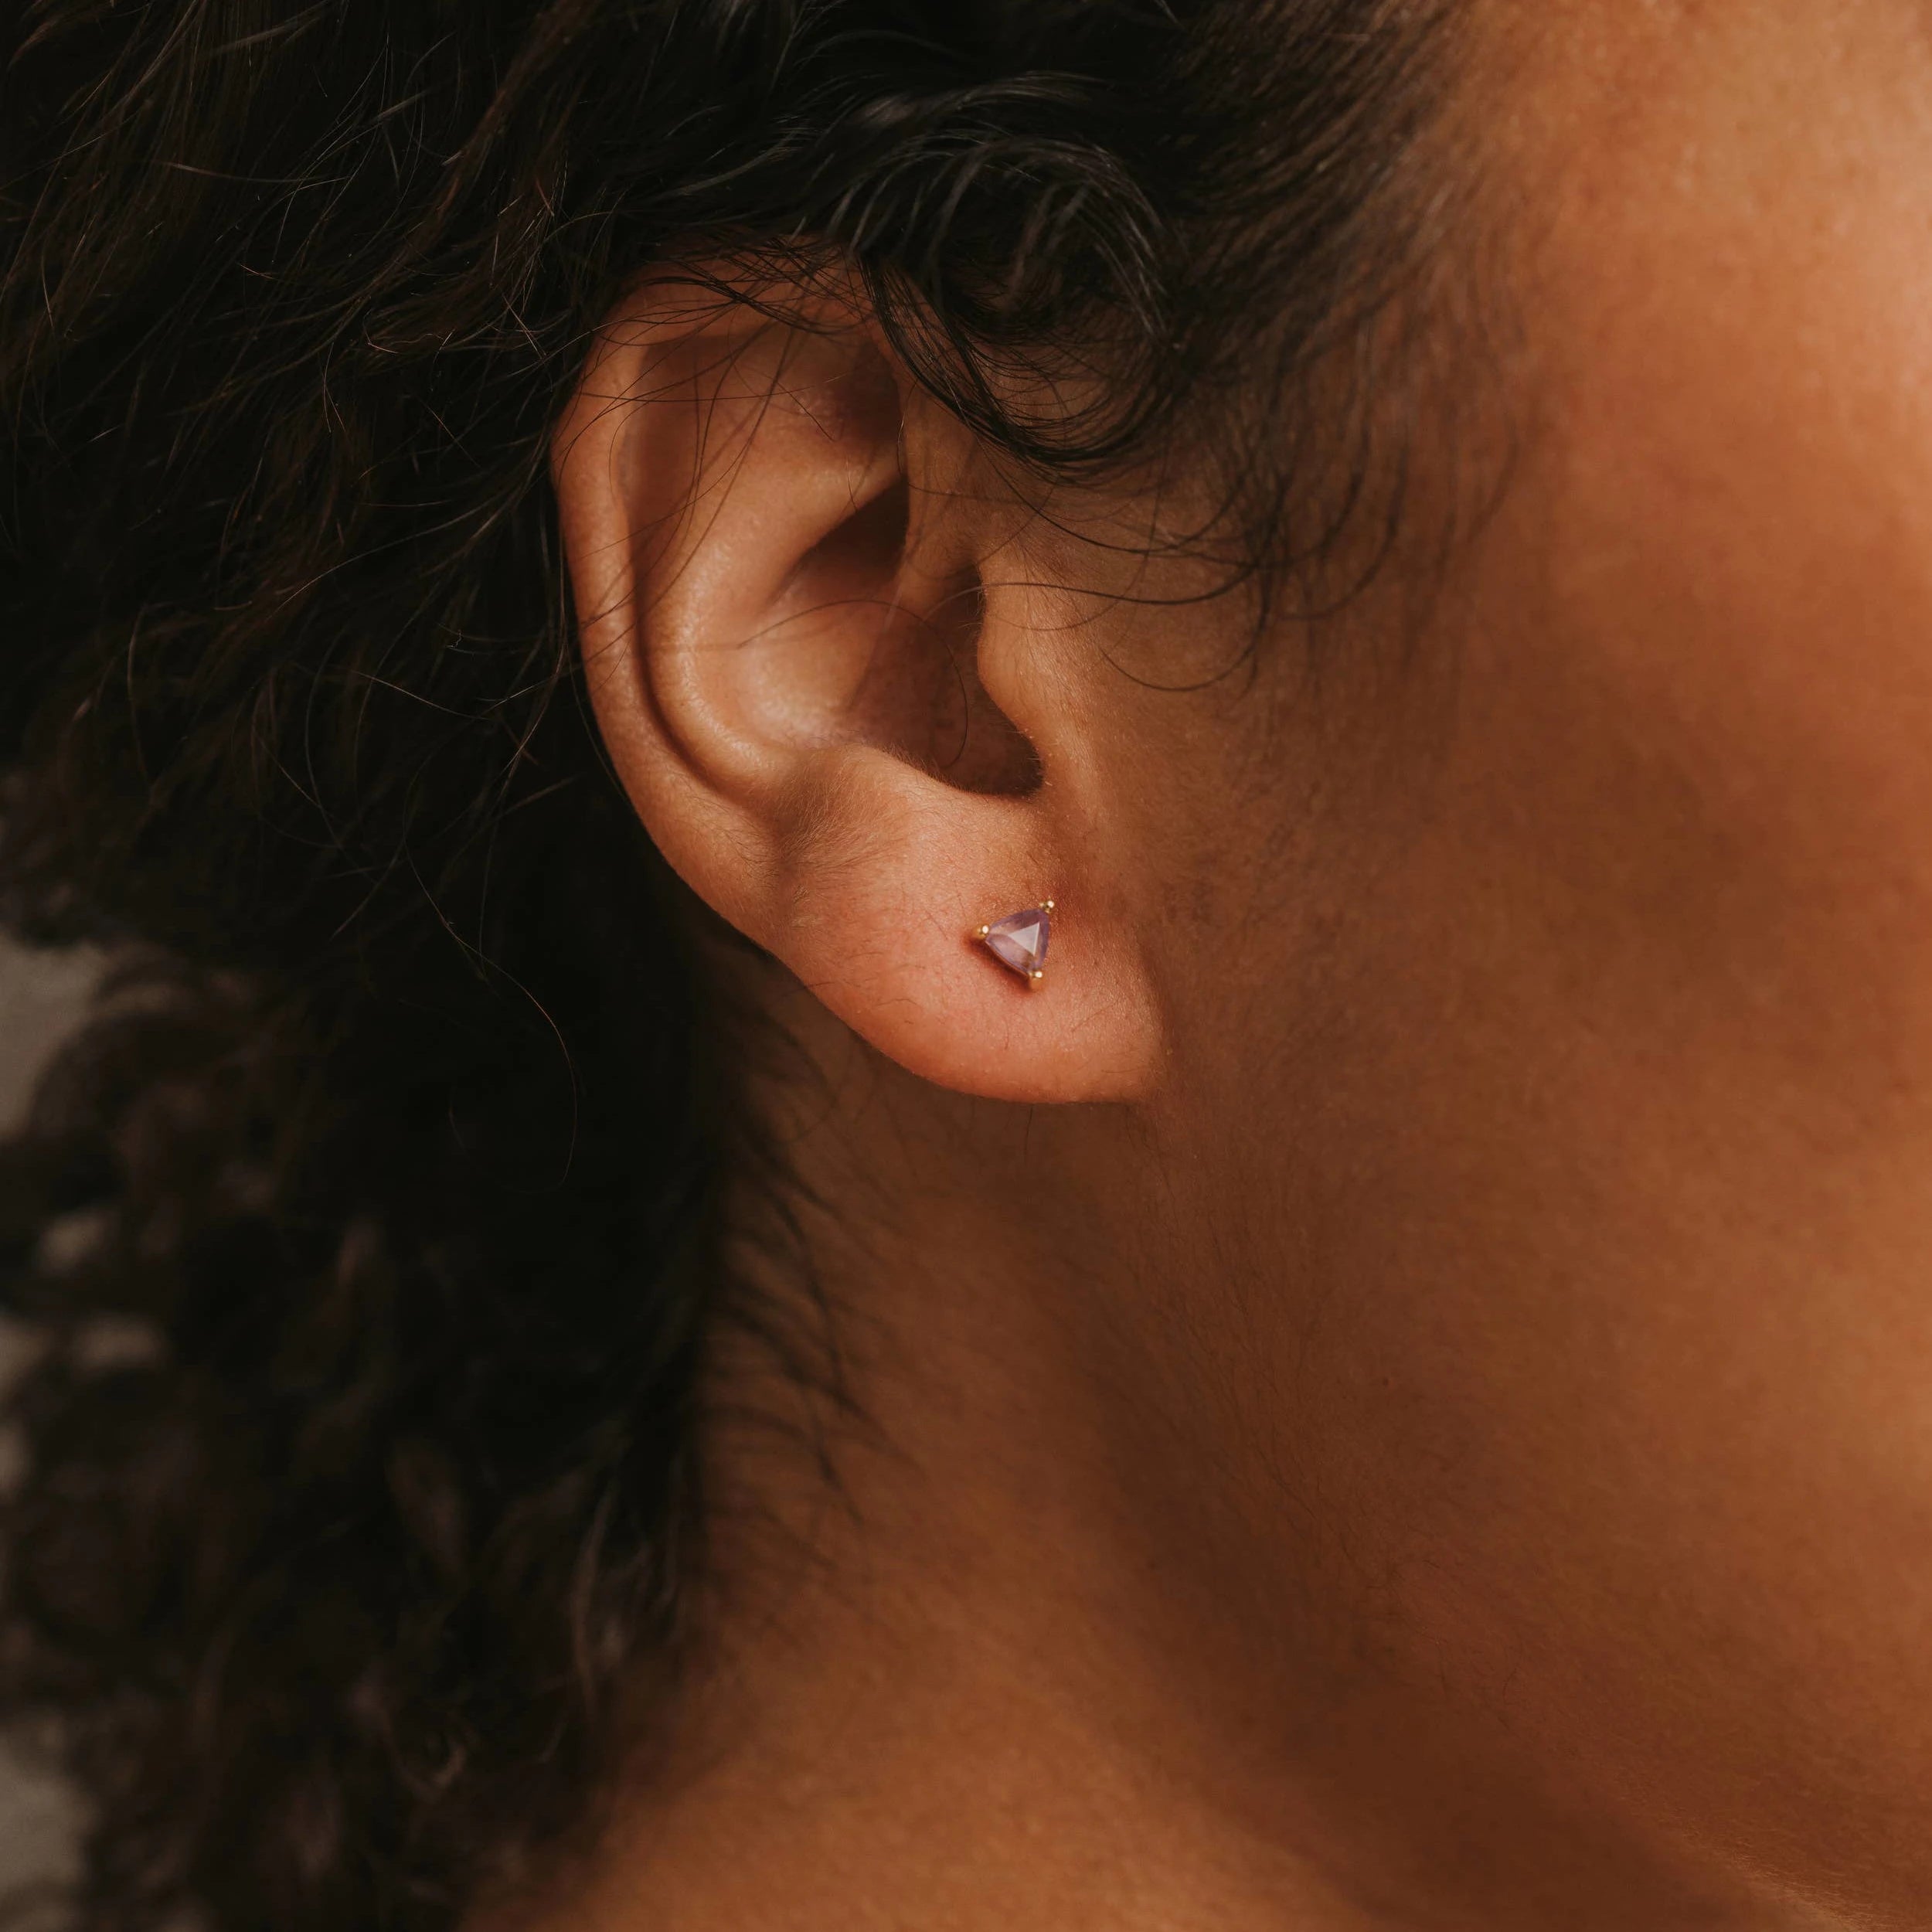 Model wearing the mini amethyst energy gem earring.